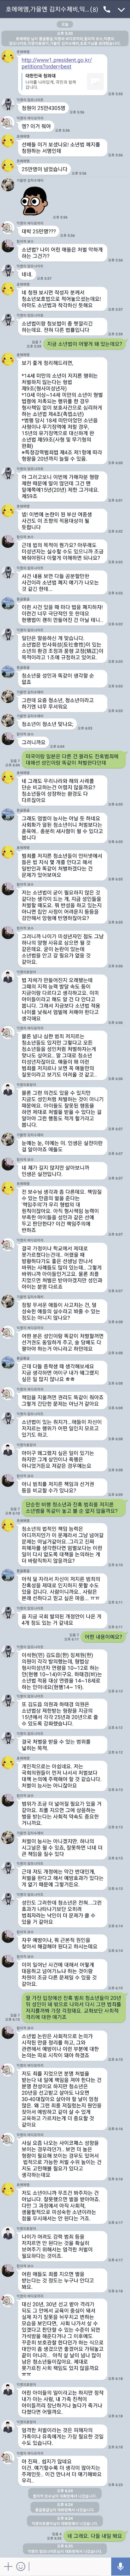 [법조기자 뒷담화] "소년법 폐지" vs "신중해야" 끝장토론